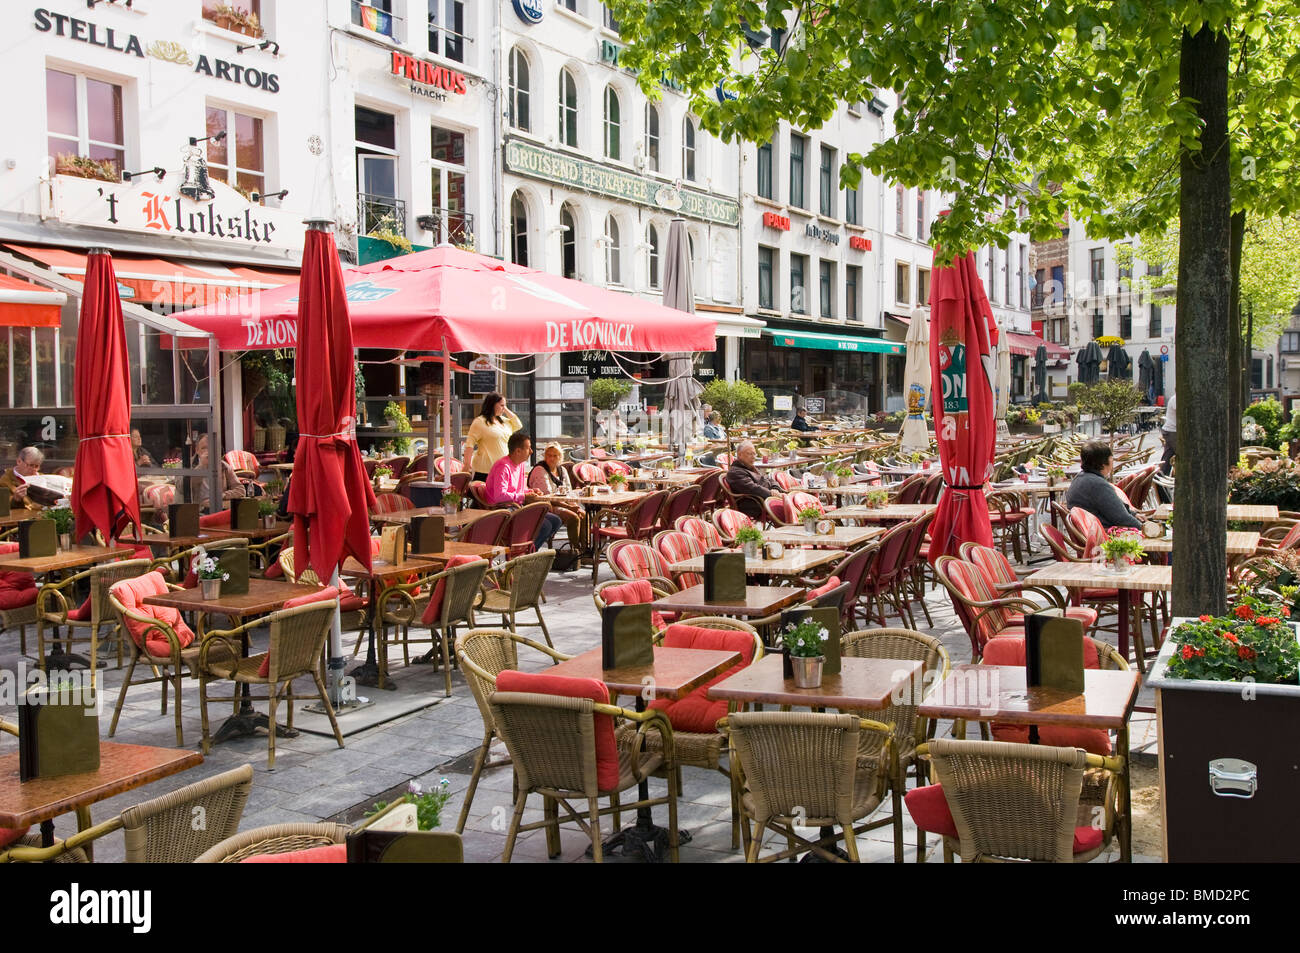 Street cafe scene in Groenplaats, Antwerp, Belgium Stock Photo